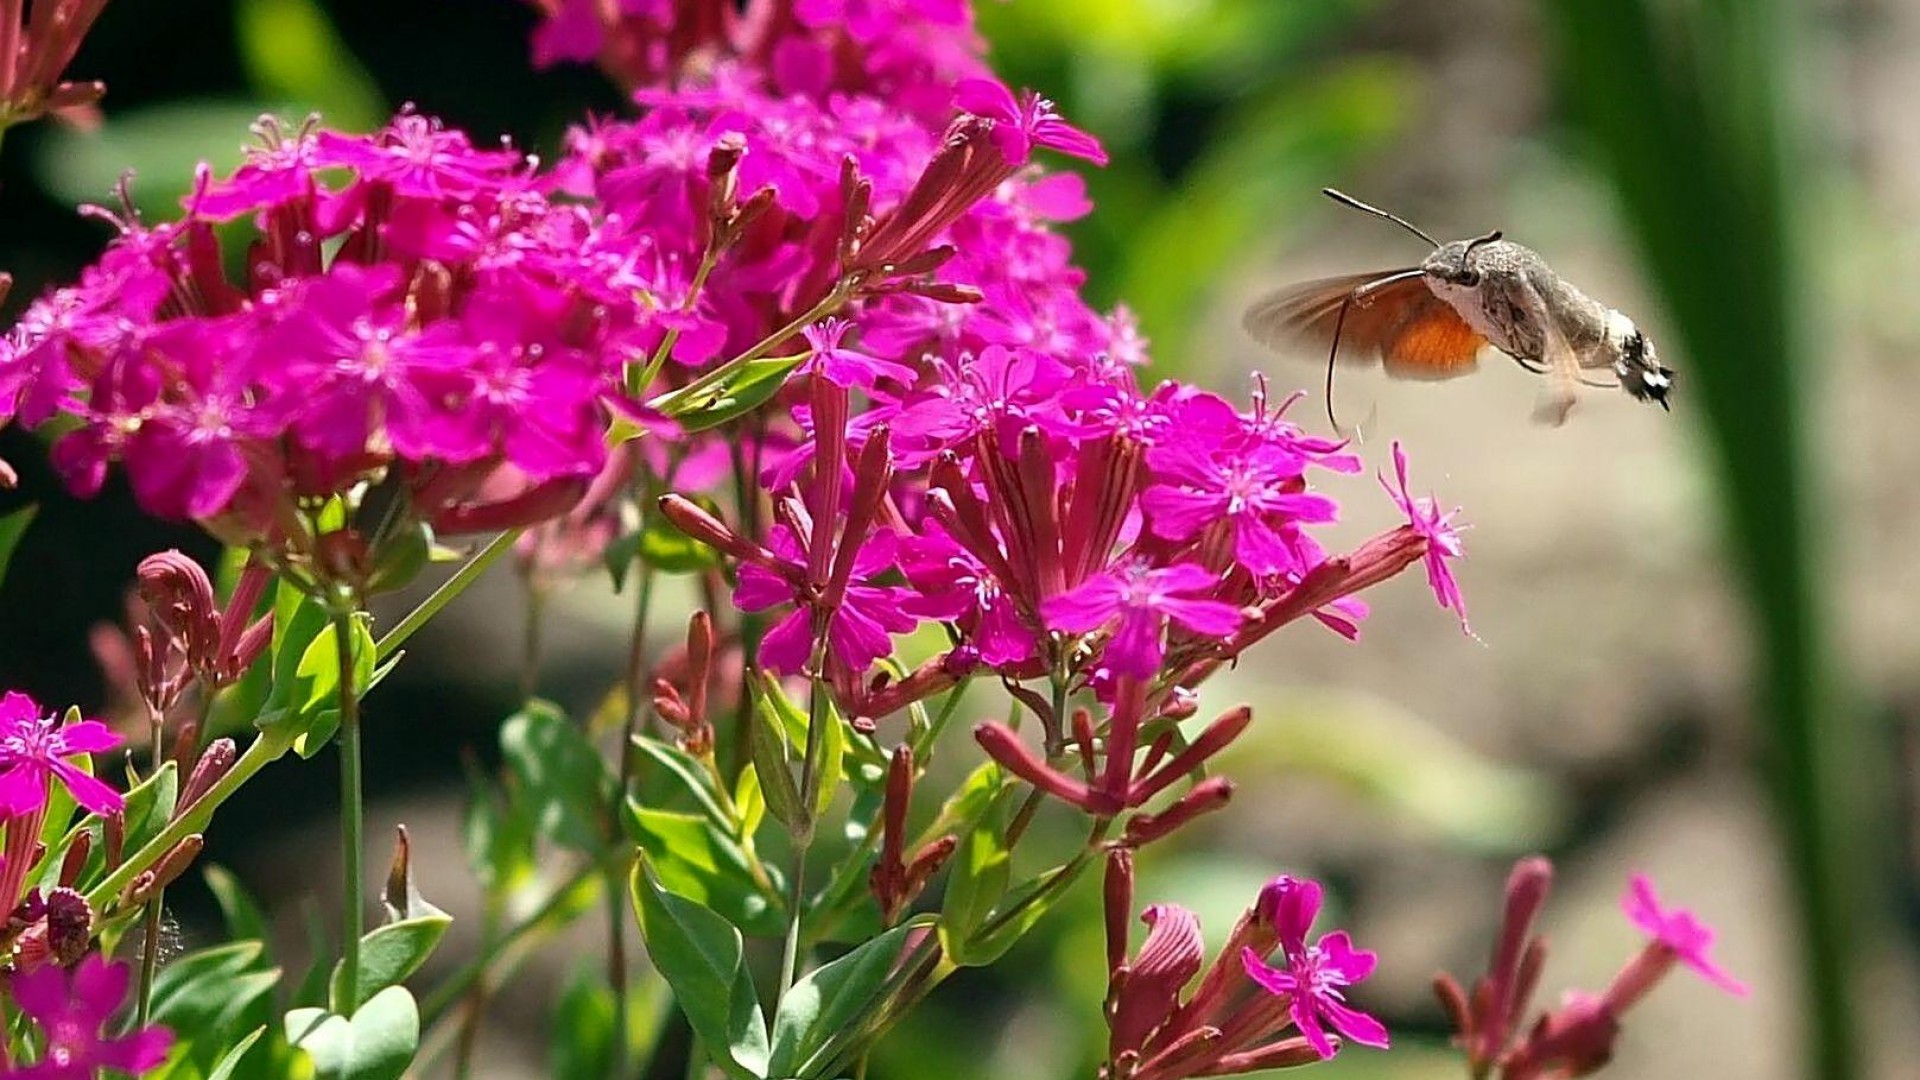 descarga gratis fondos de pantalla animados para móviles,insecto,flor,planta,rosado,mariposa